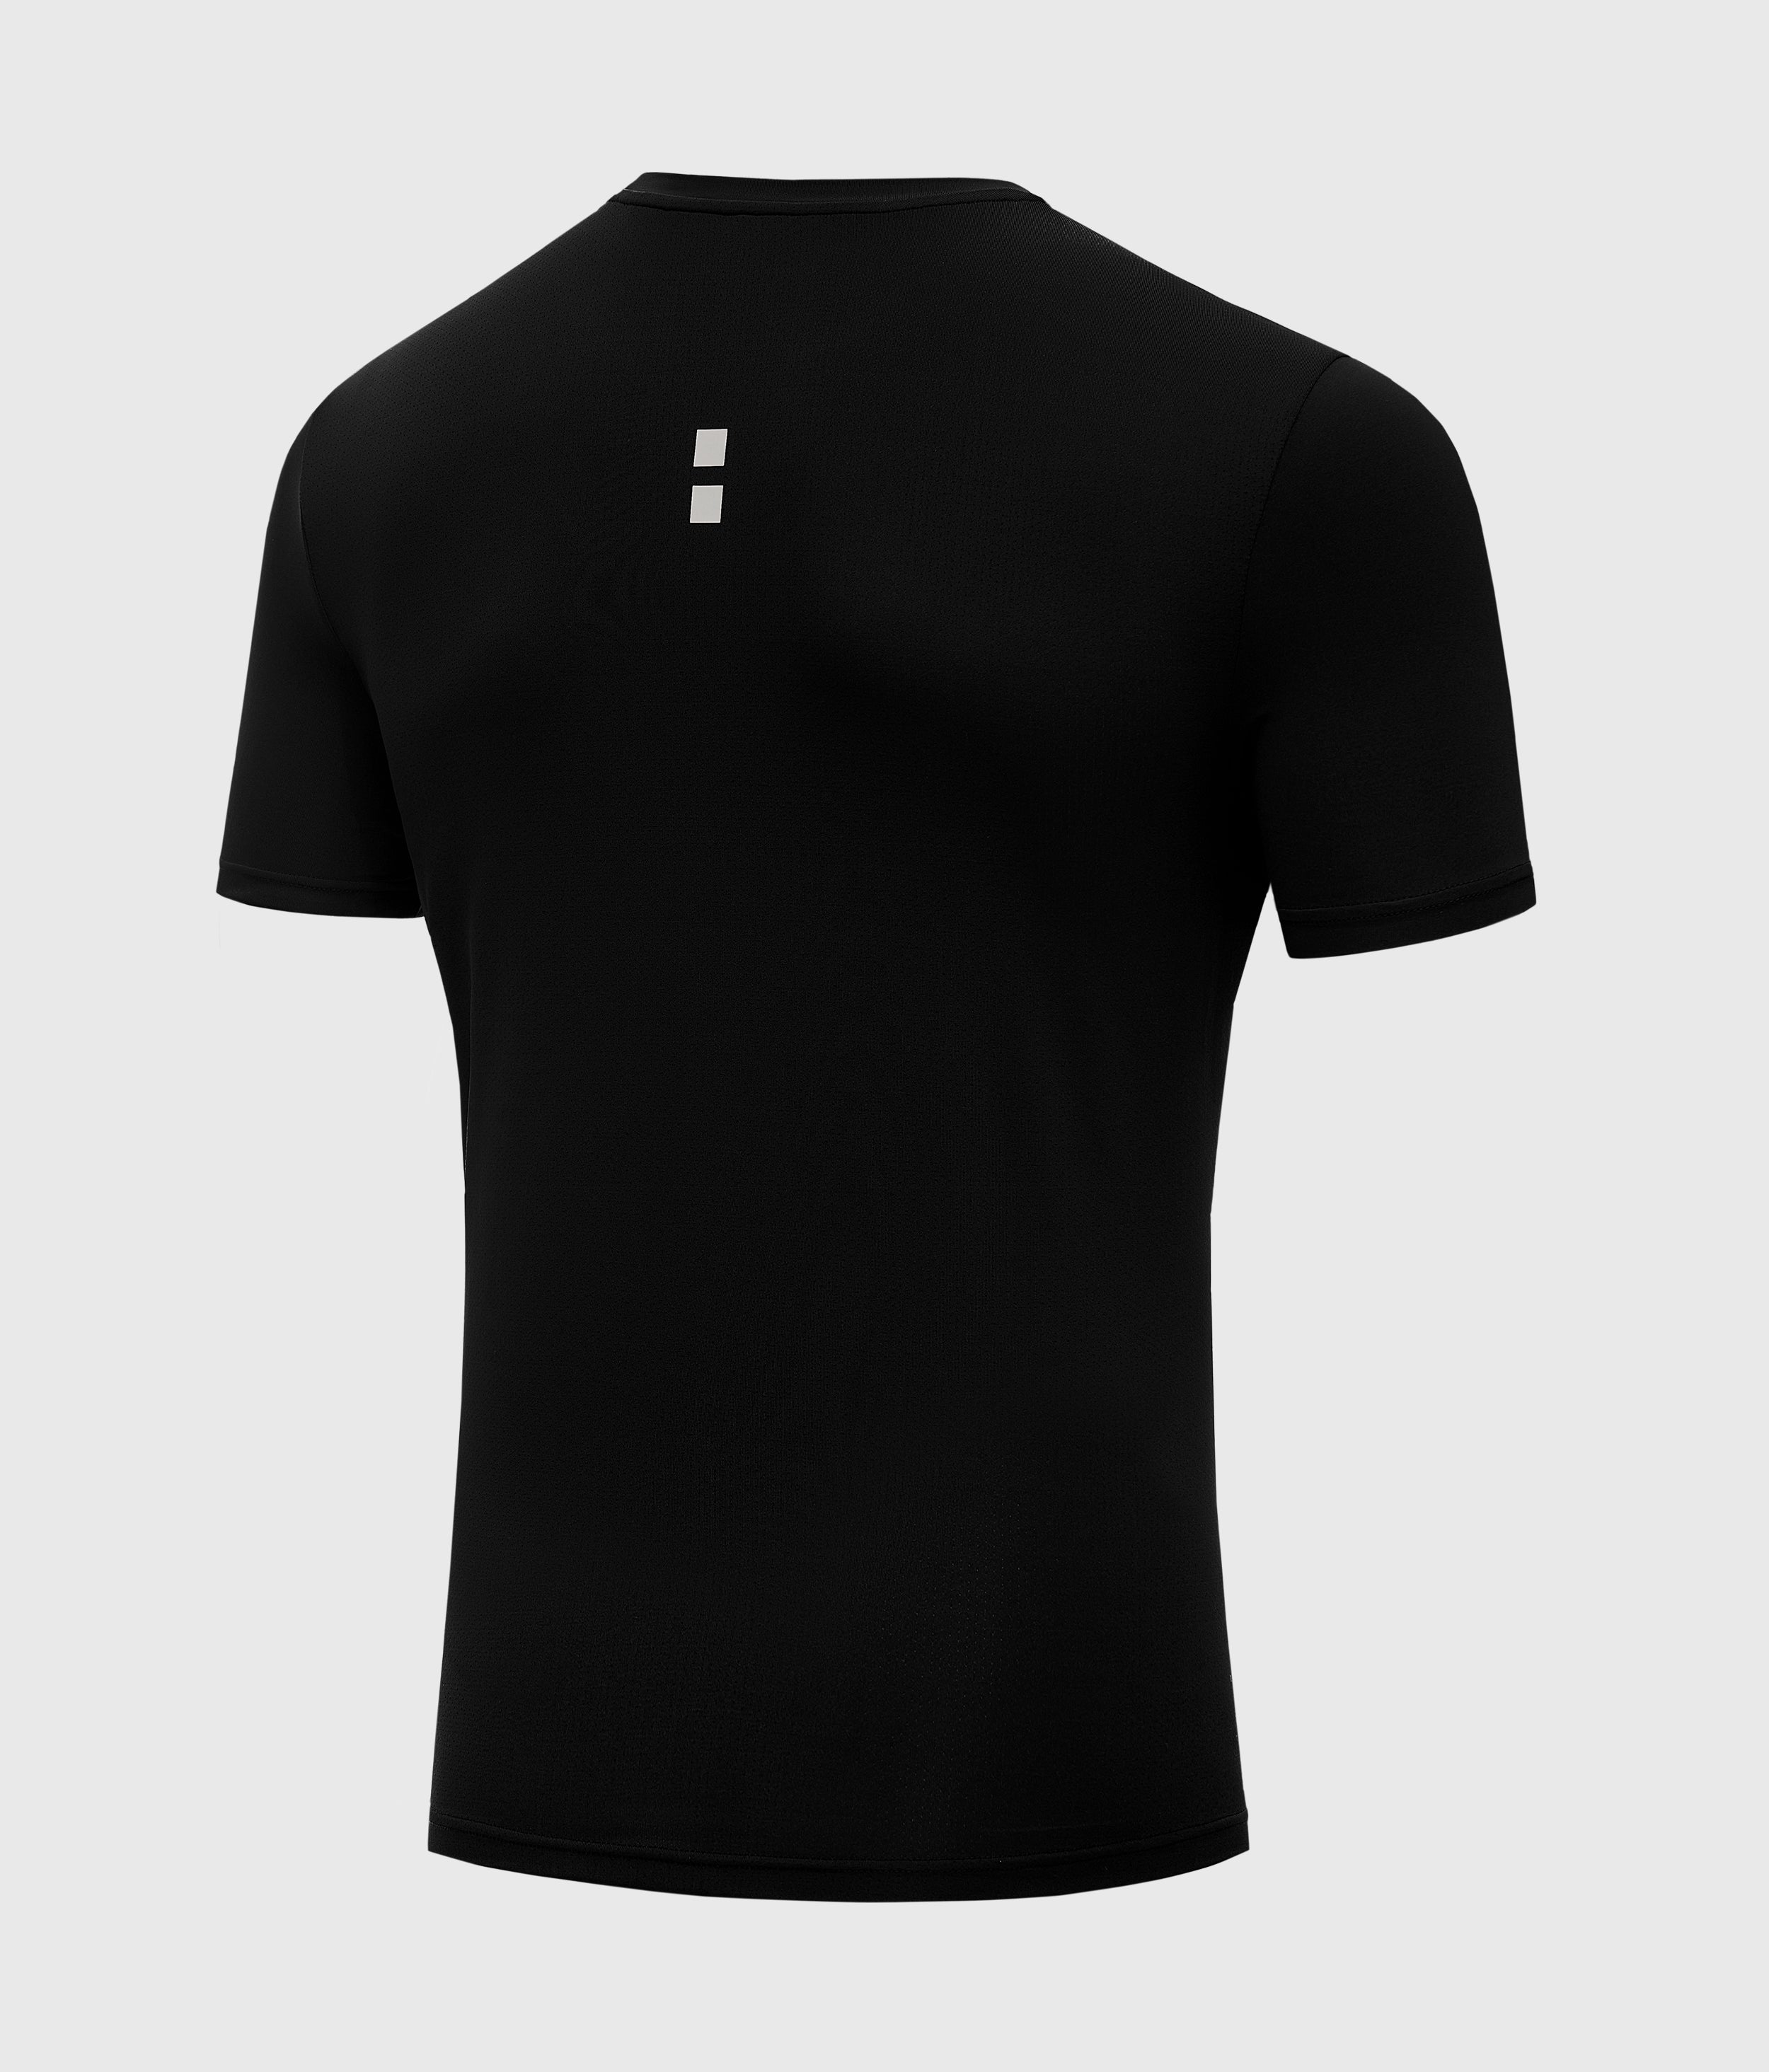 nordicdots tennis padel t-shirt shop men apparel nordicdots.com